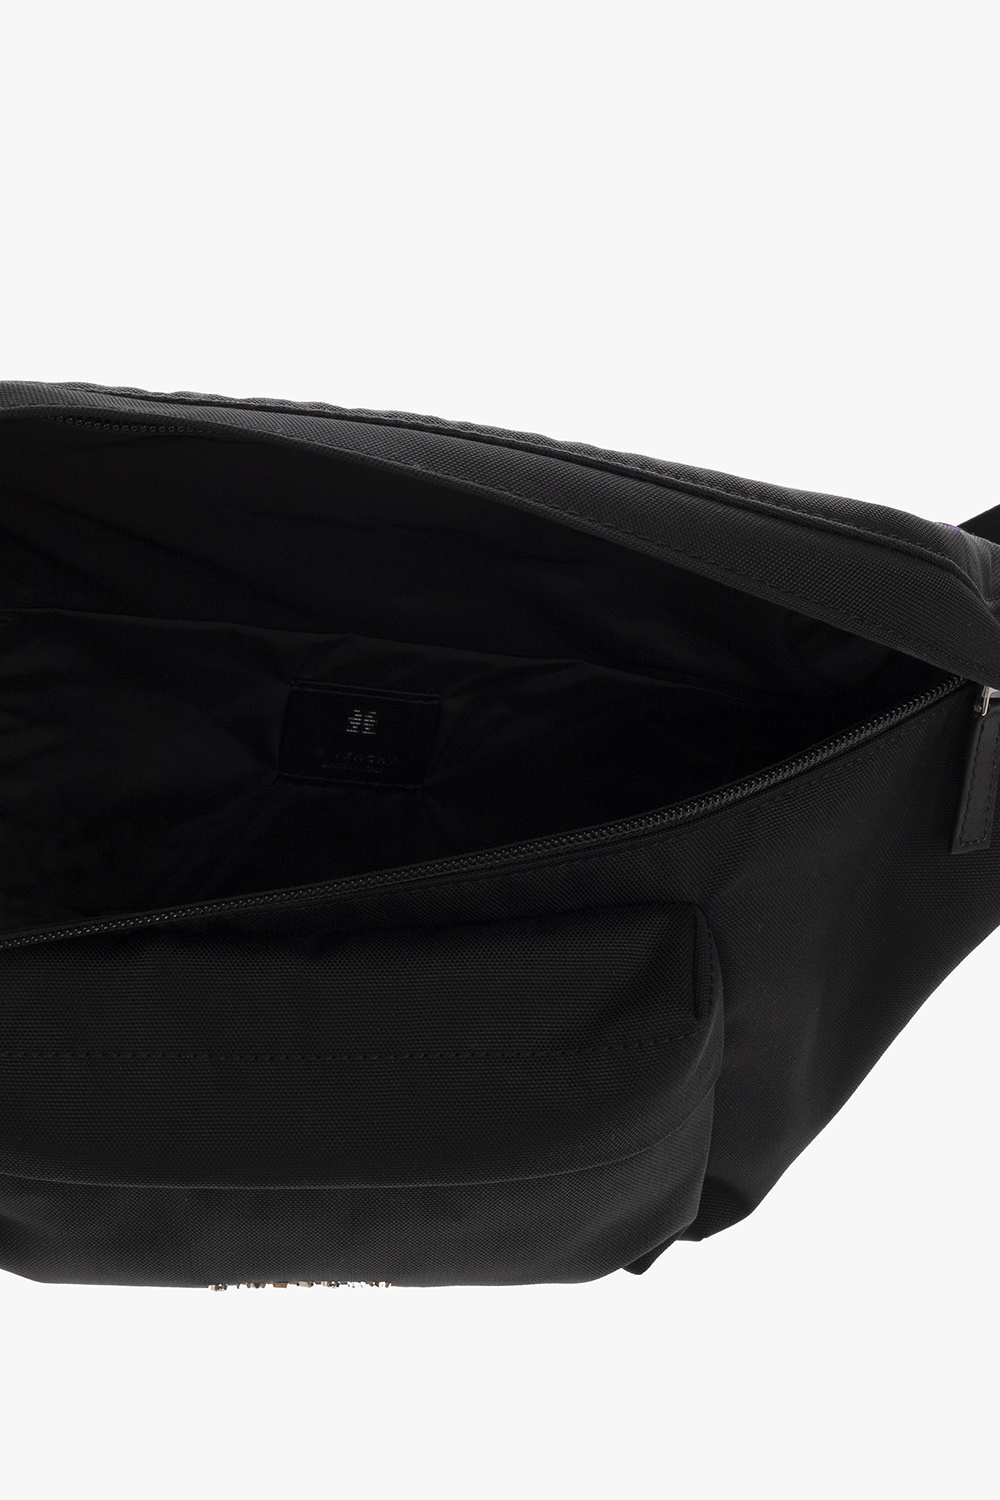 givenchy weekender ‘Essential’ belt bag